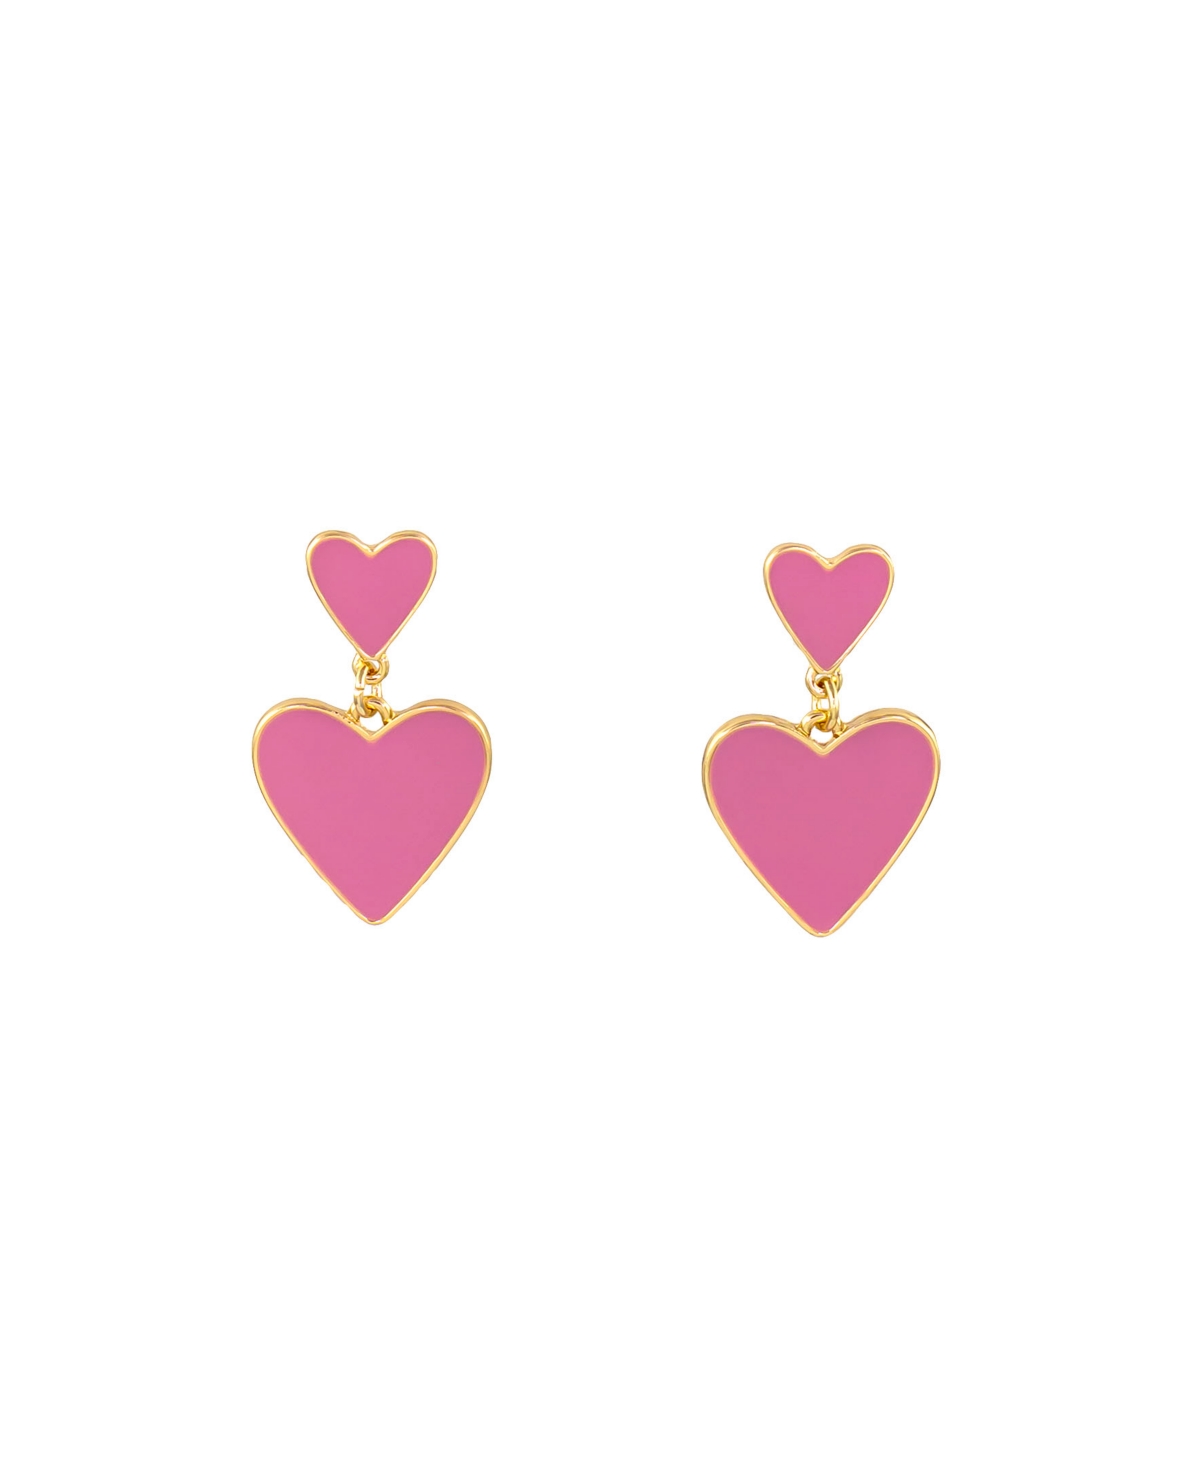 Laura Ashley Pierced Earring Double Link Hearts Earring In Pink